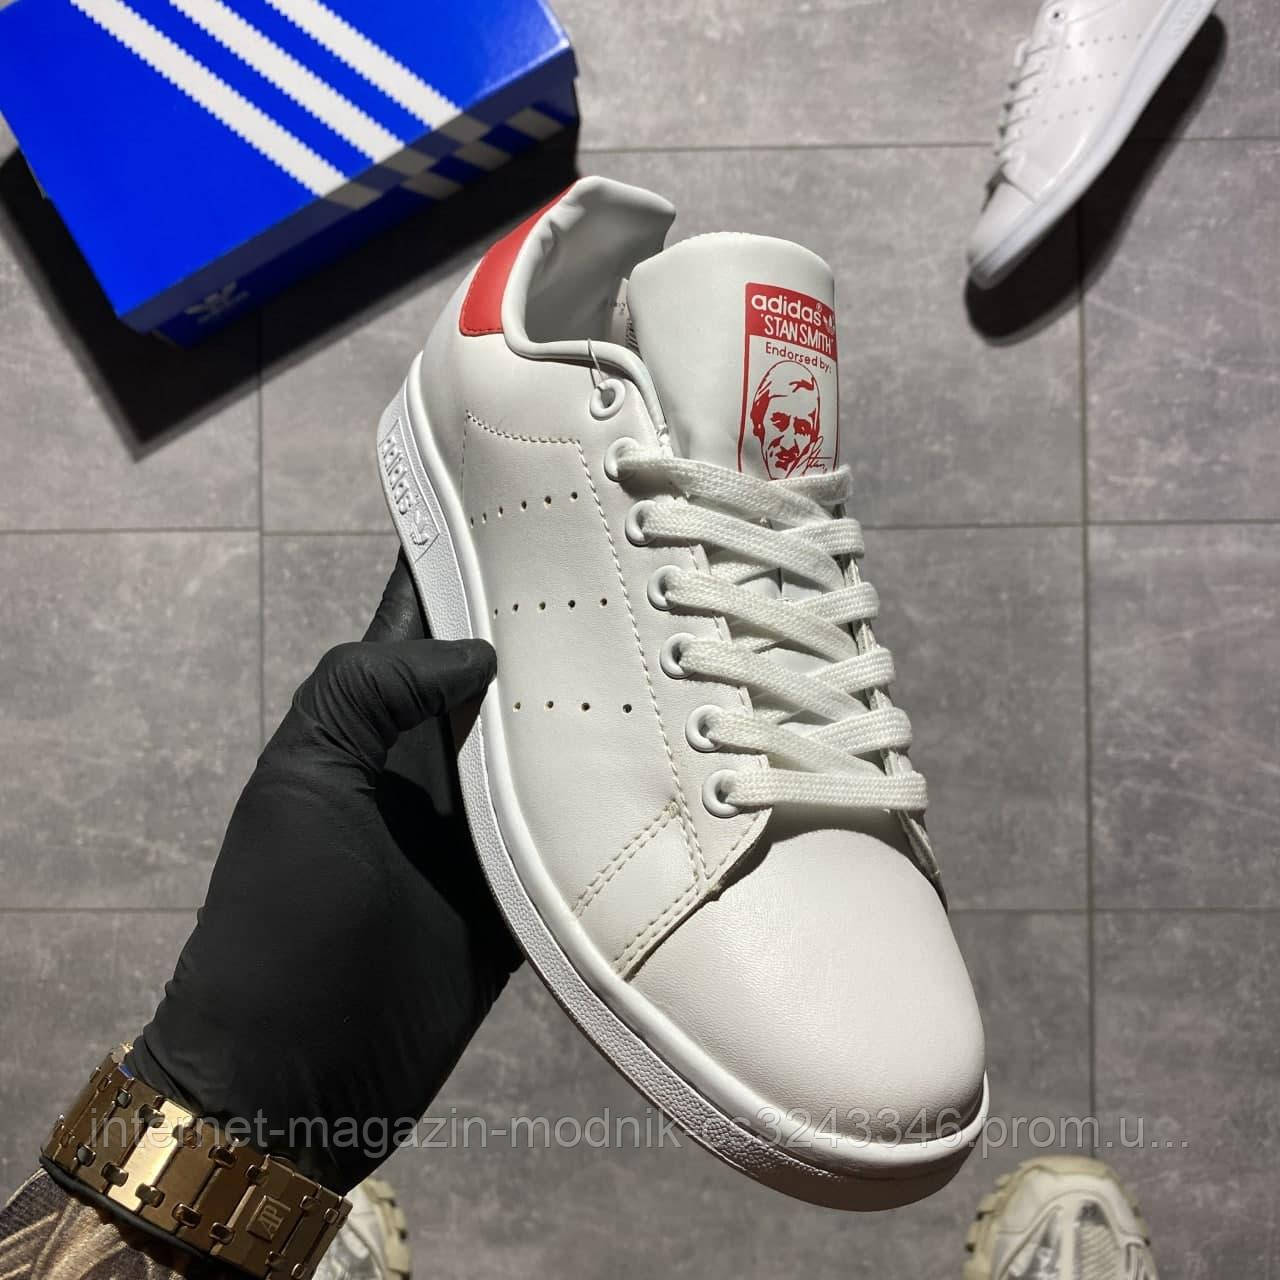 Чоловічі кросівки Adidas Stan Smith White Red (білі) C-2628 шкіряні супер якісні кеди